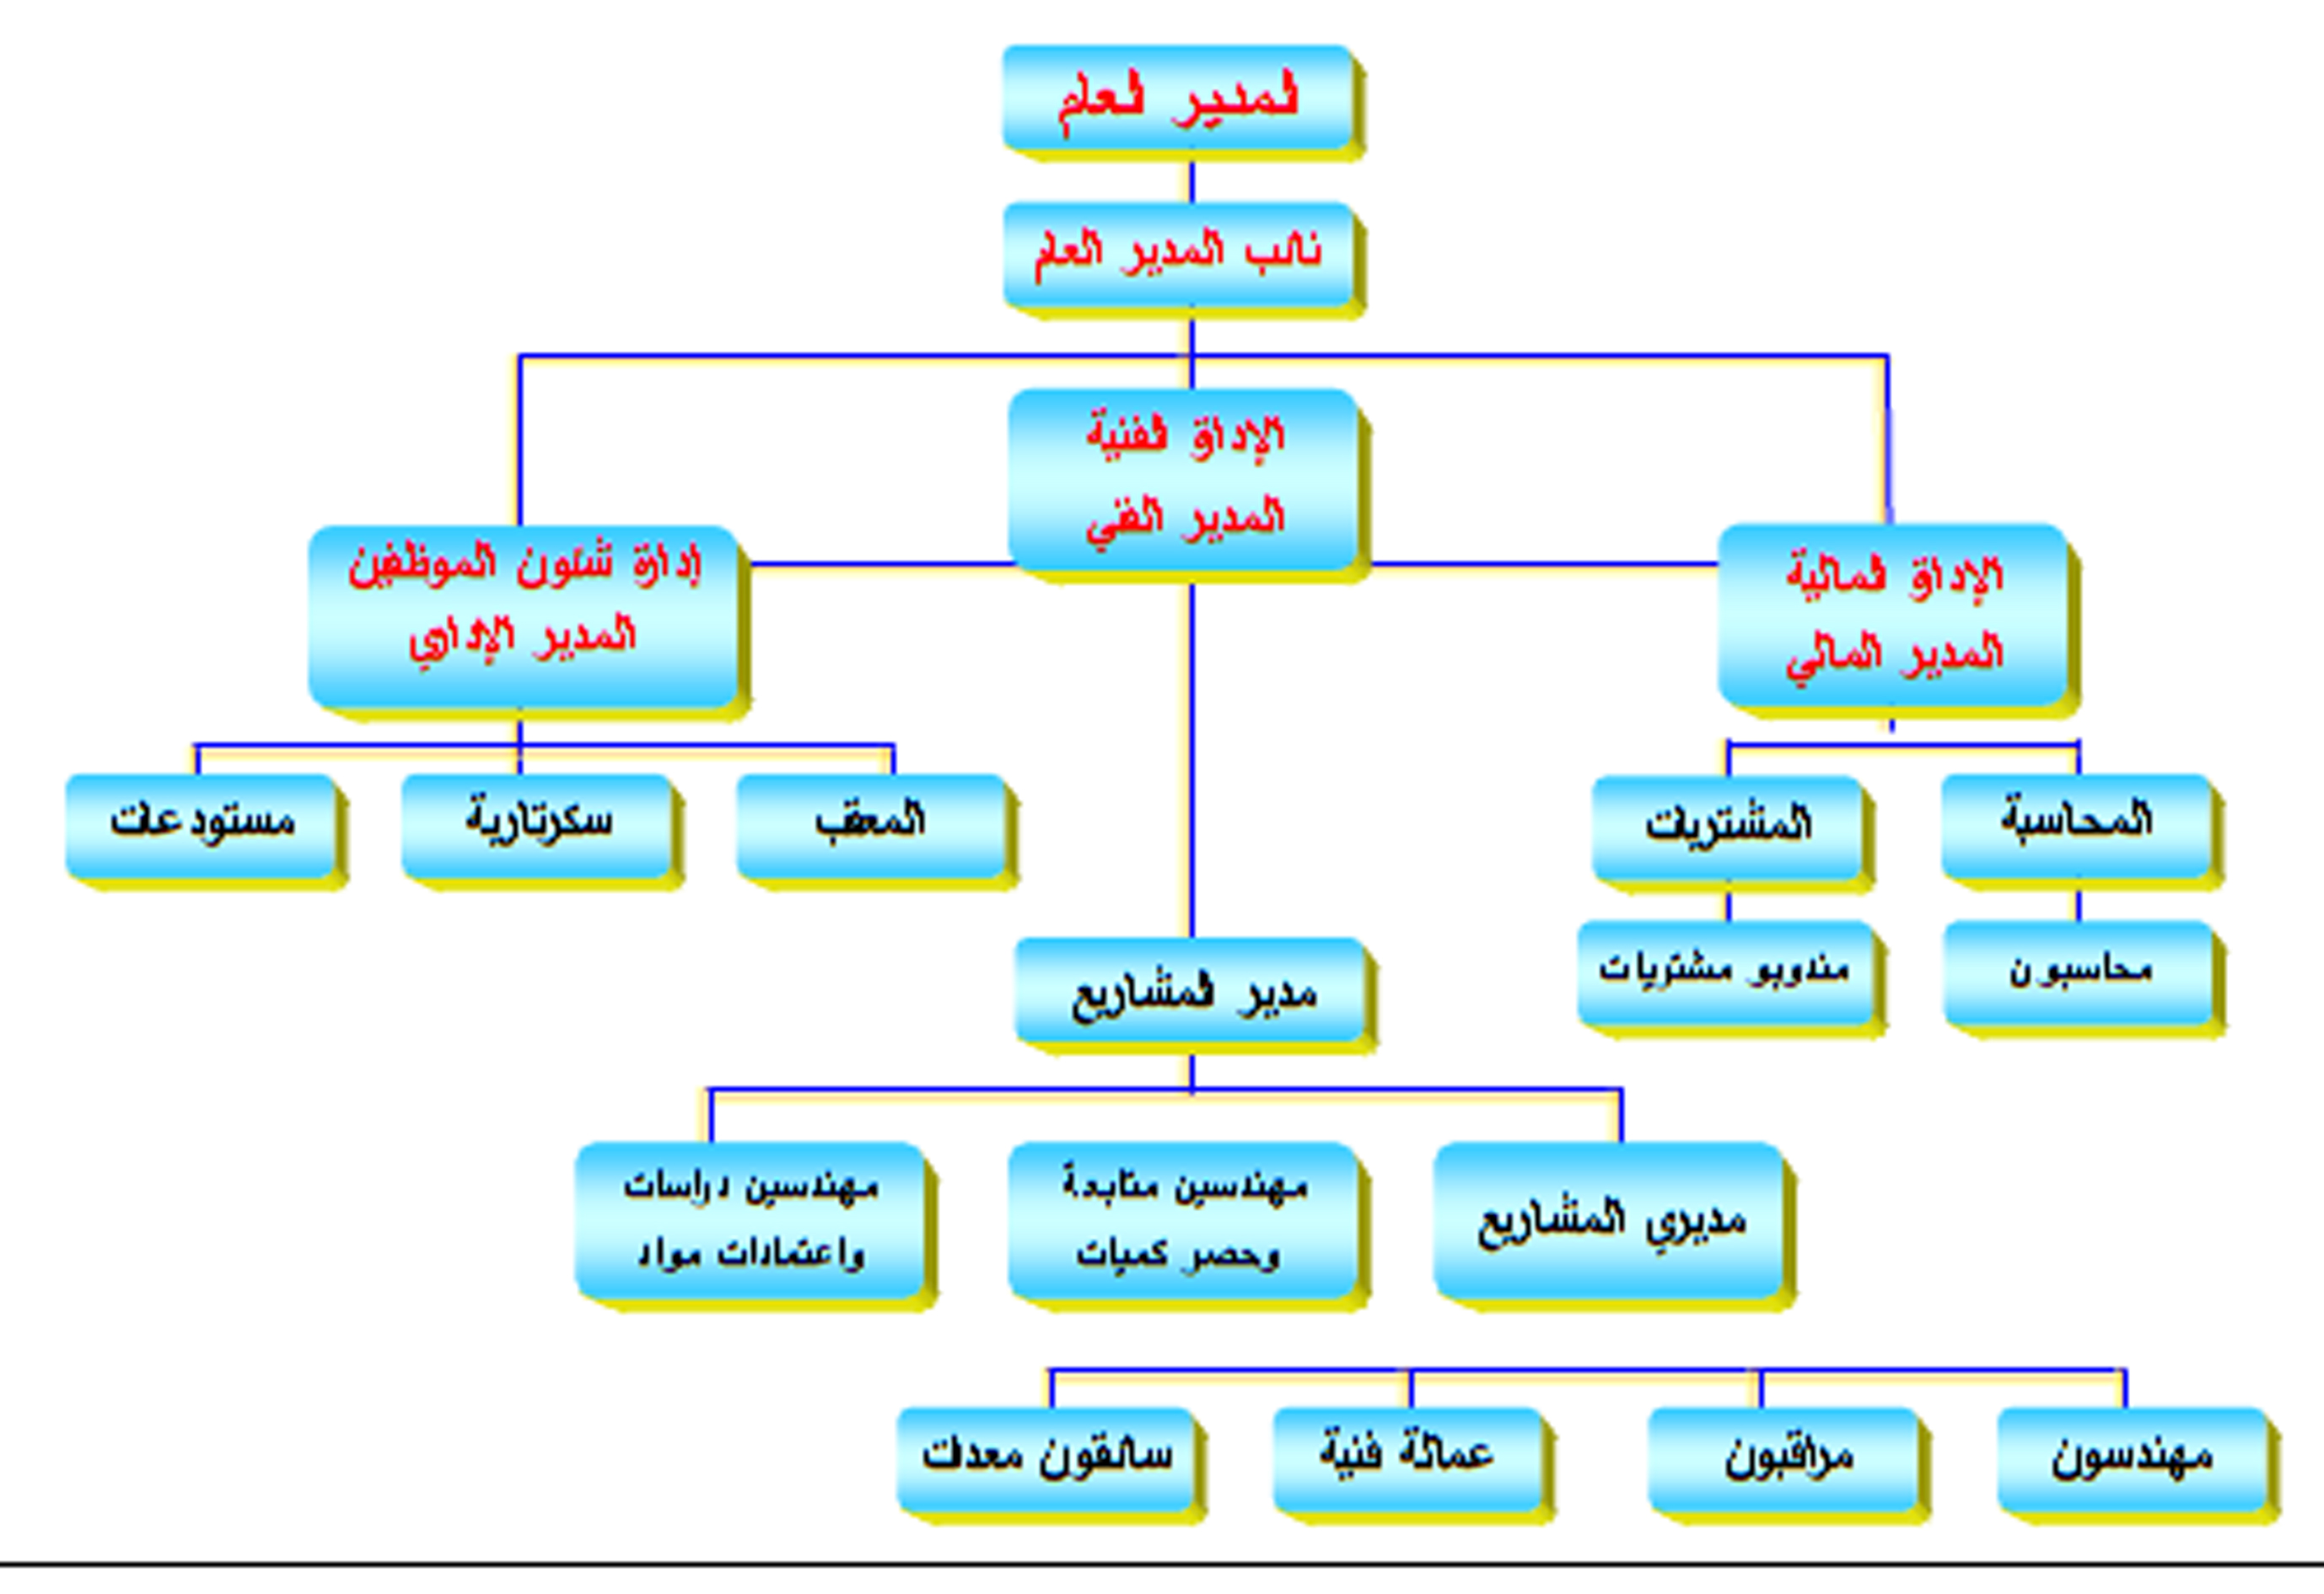 الهيكل التنظيمي لشركة زين السعودية